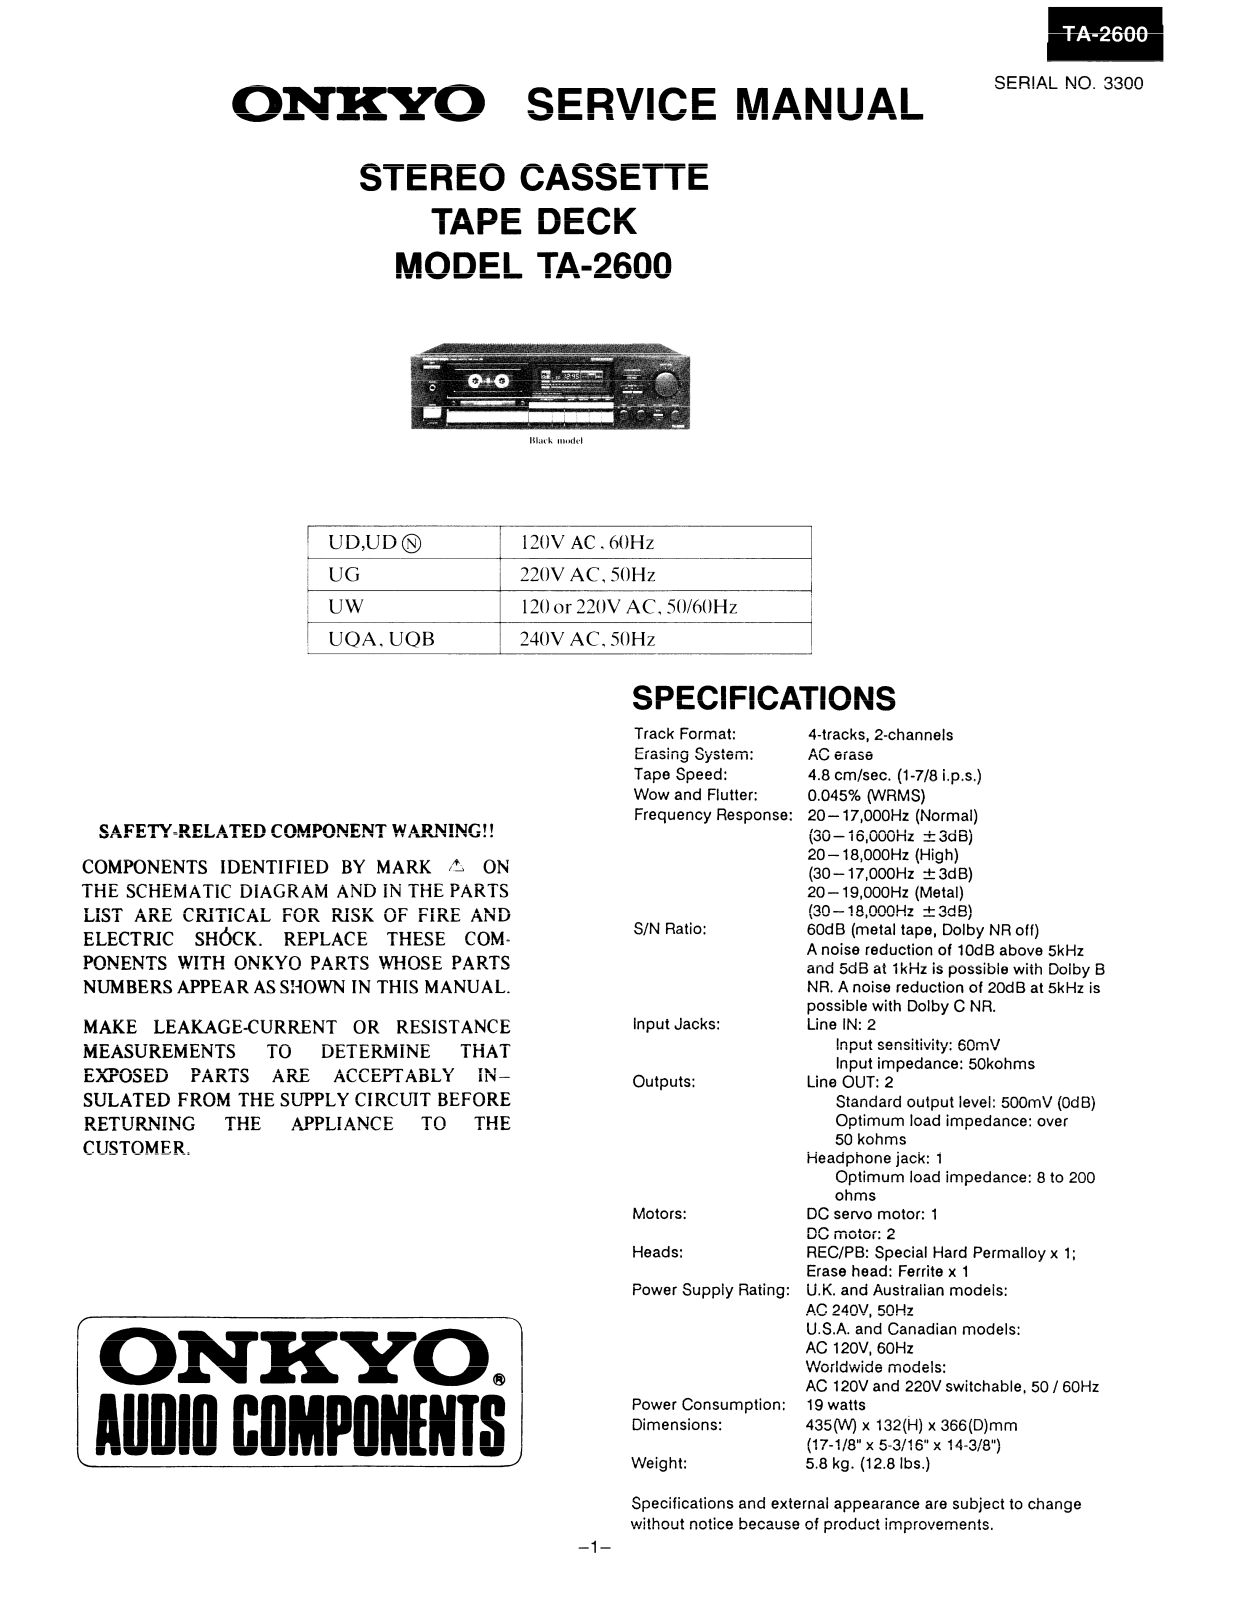 Onkyo TA-2600 Service manual